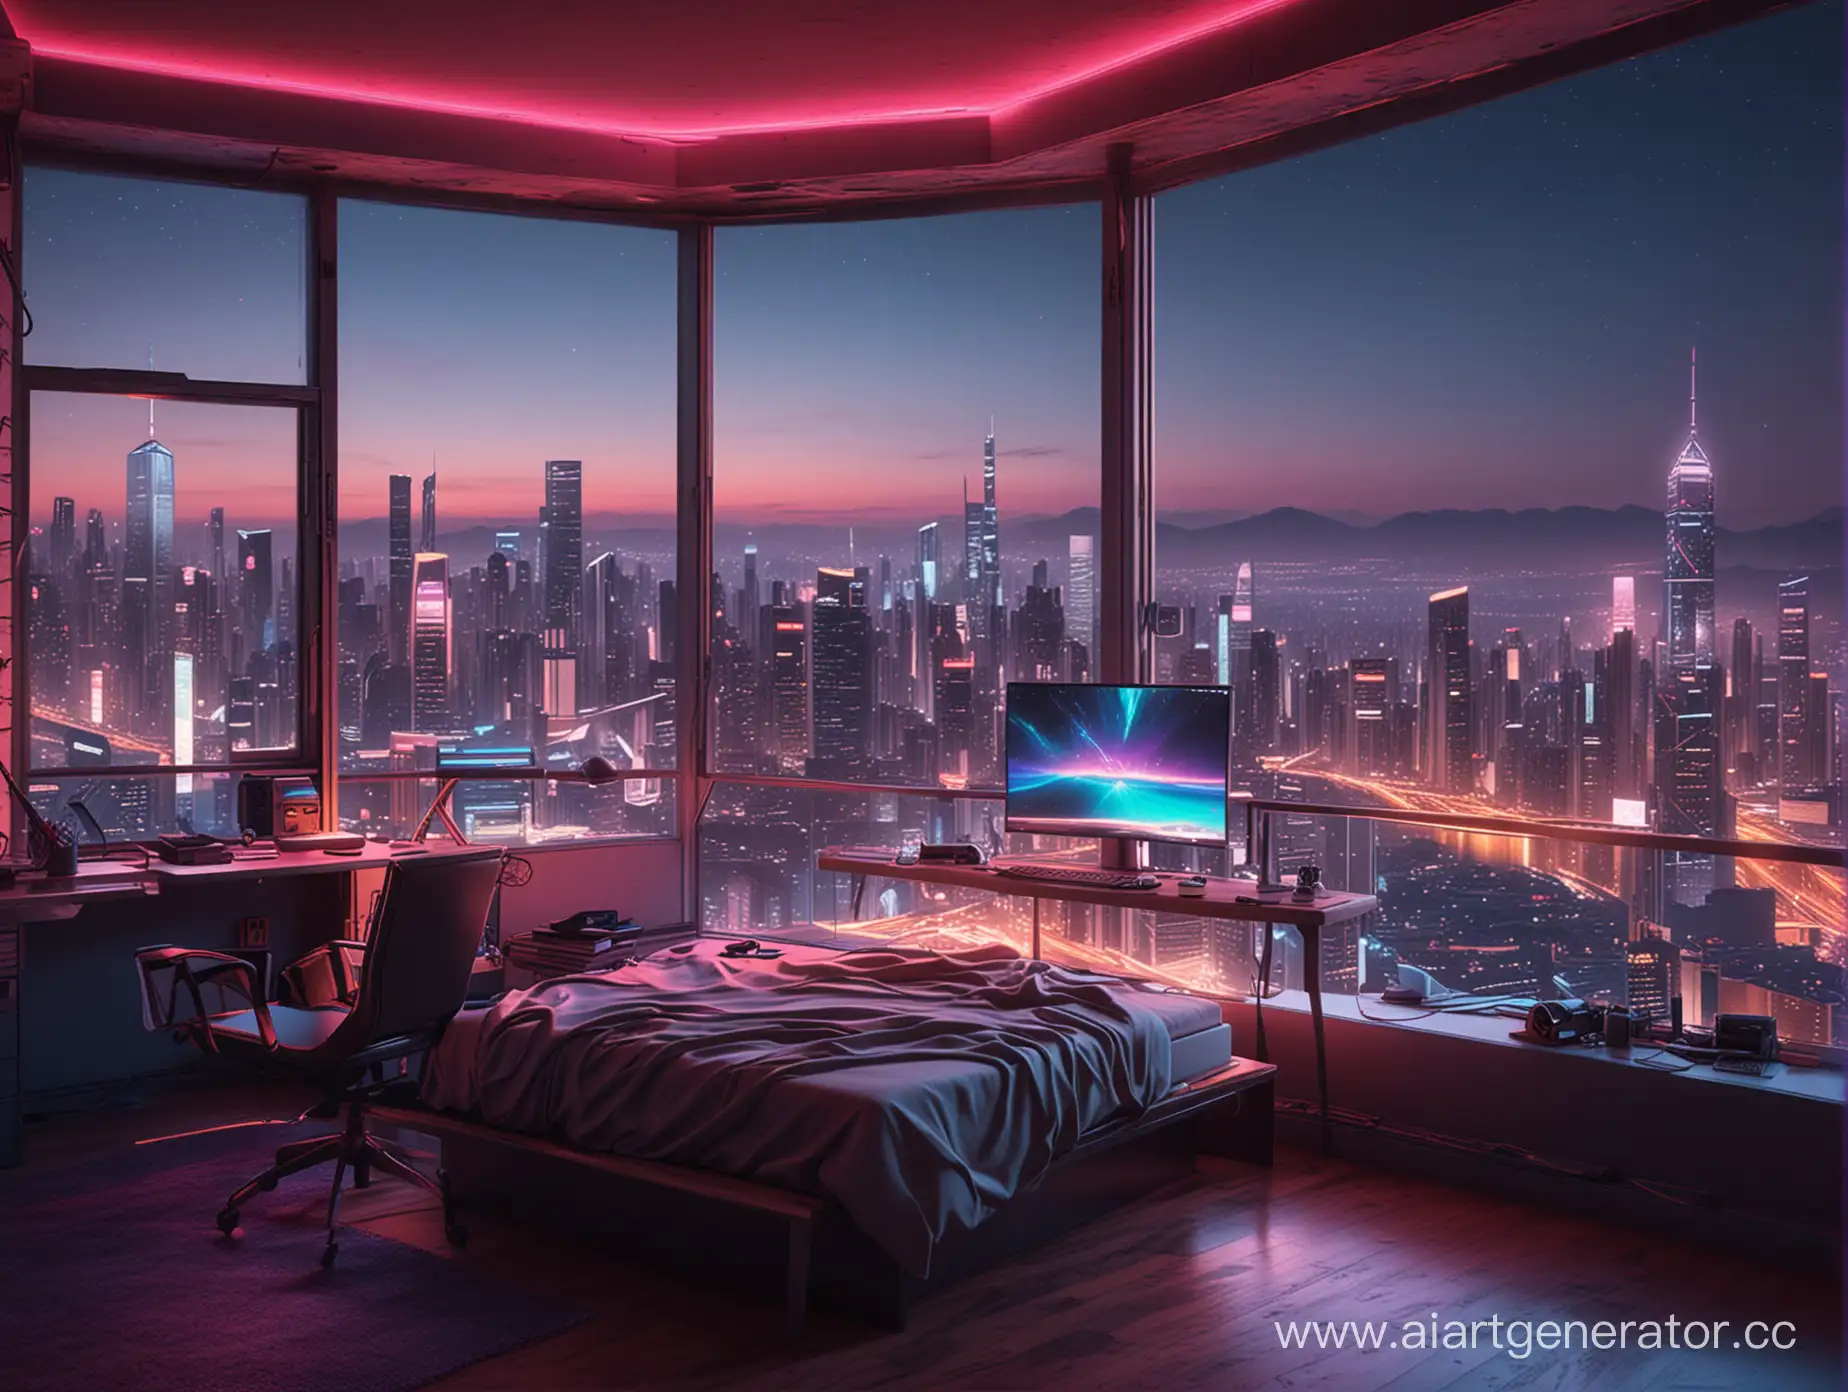 просторная комната с красивым компьютерным столом и уютной кроватью в неоне, с панорамными окнами с видом на ночные высотки, в стиле киберпанк